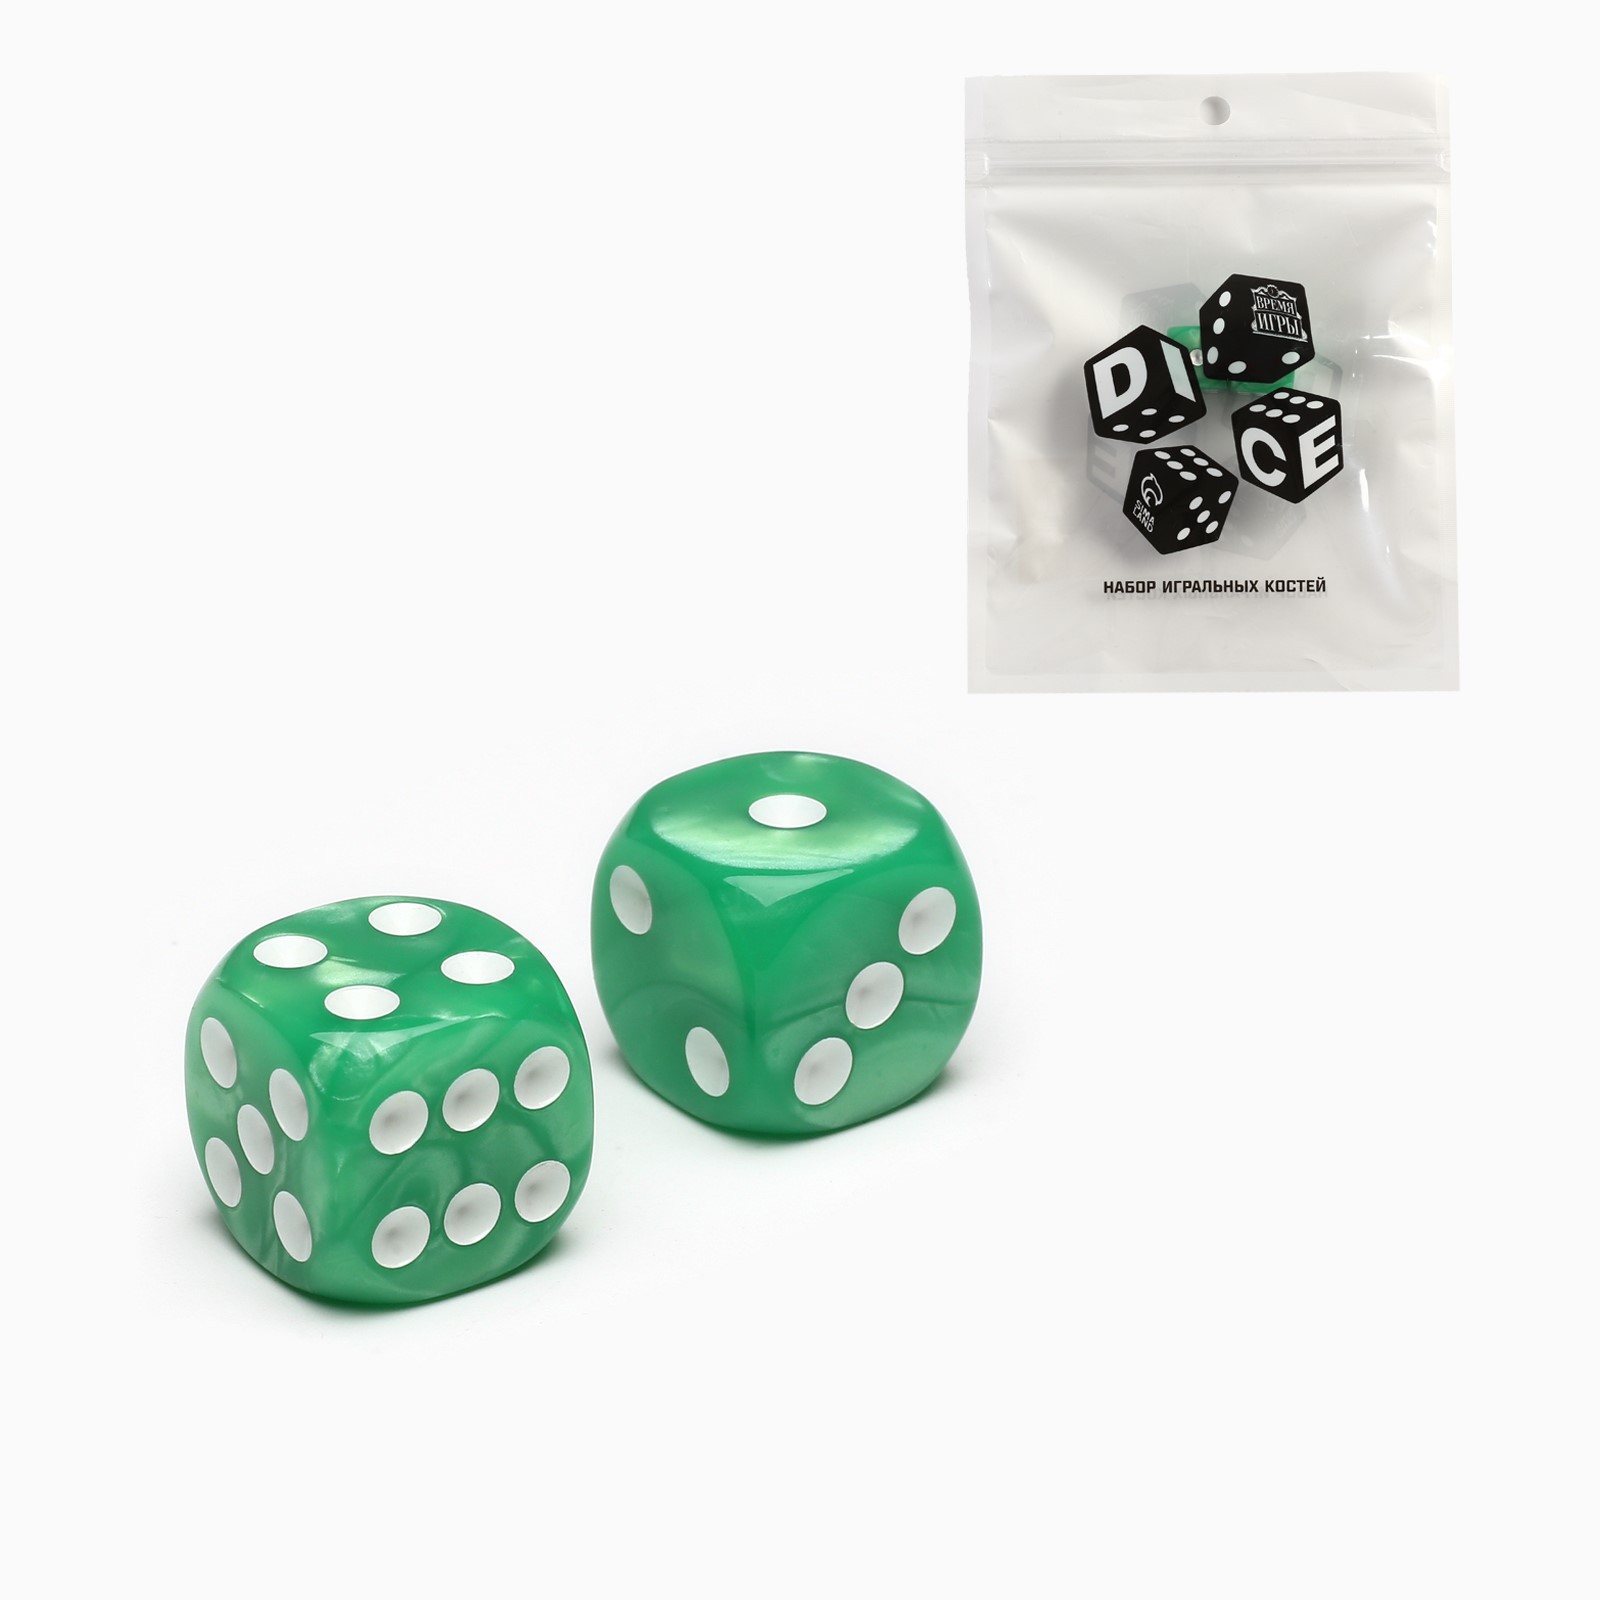 Кубики Sima-Land Игральные «Время игры» 1.6х1.6 см набор 2 шт зеленые - фото 2